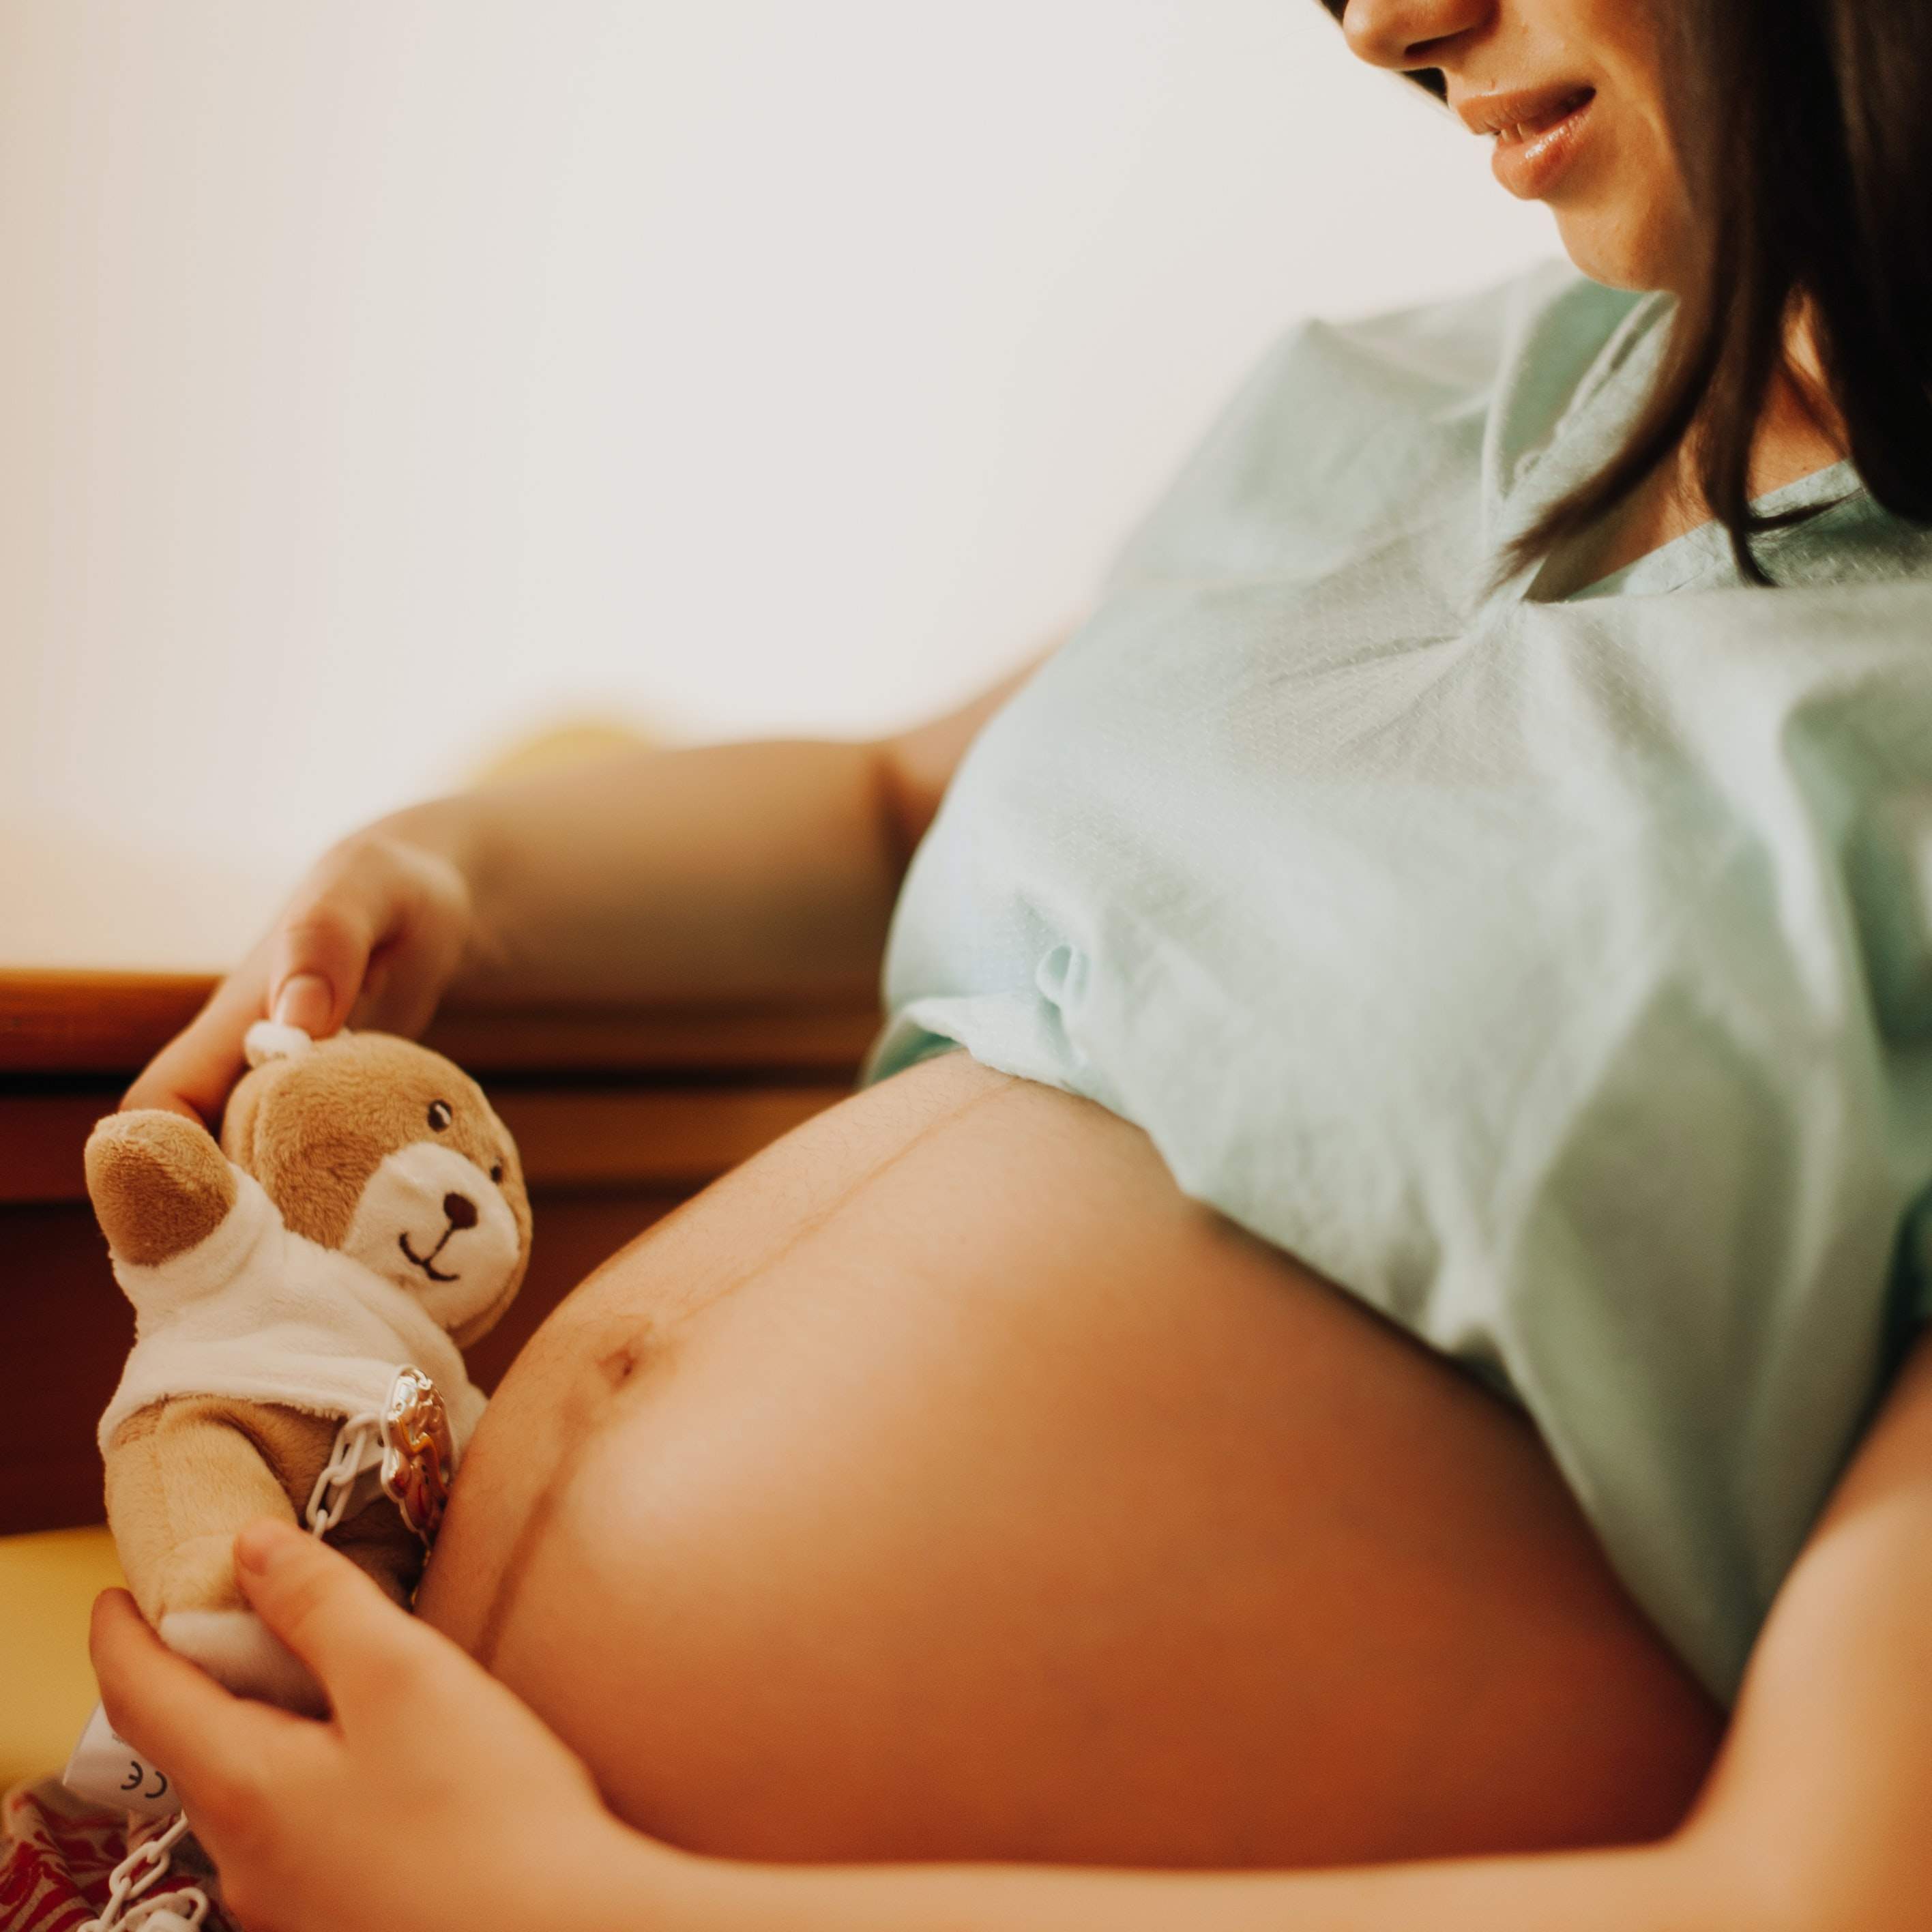 La gravidanza in donne con patologie neuromuscolari